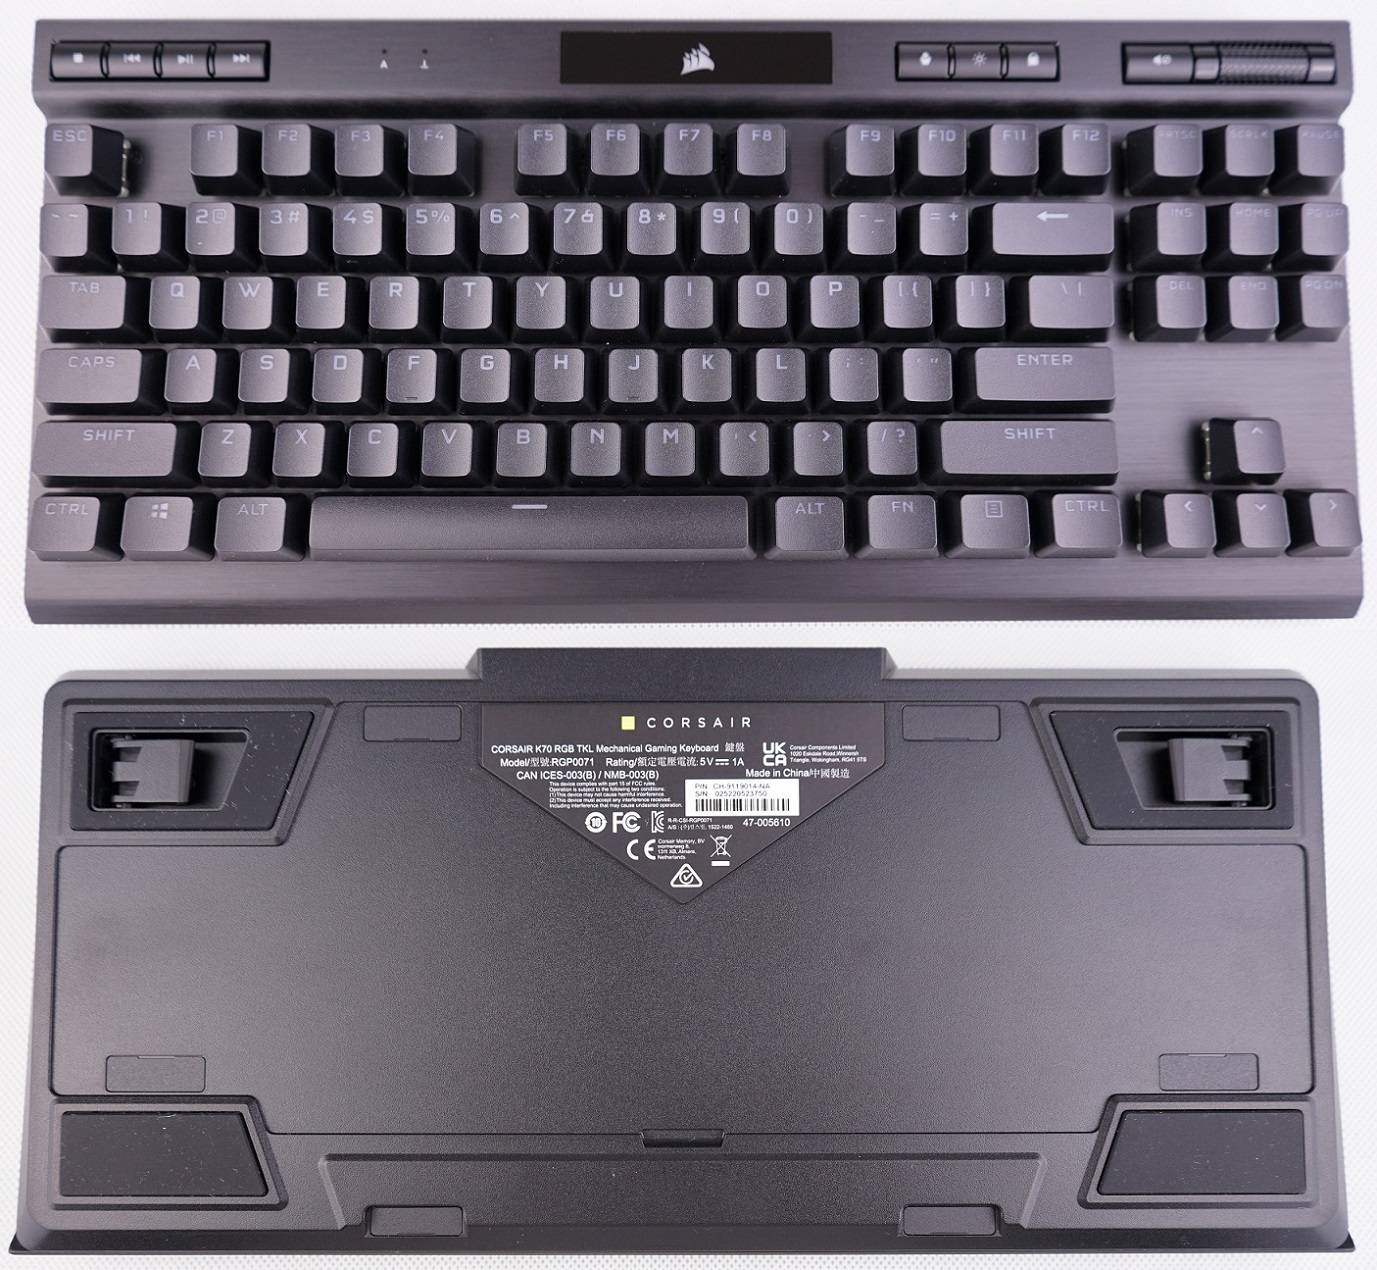 海盜船Corsair K70 RGB TKL Champion Series機械鍵盤